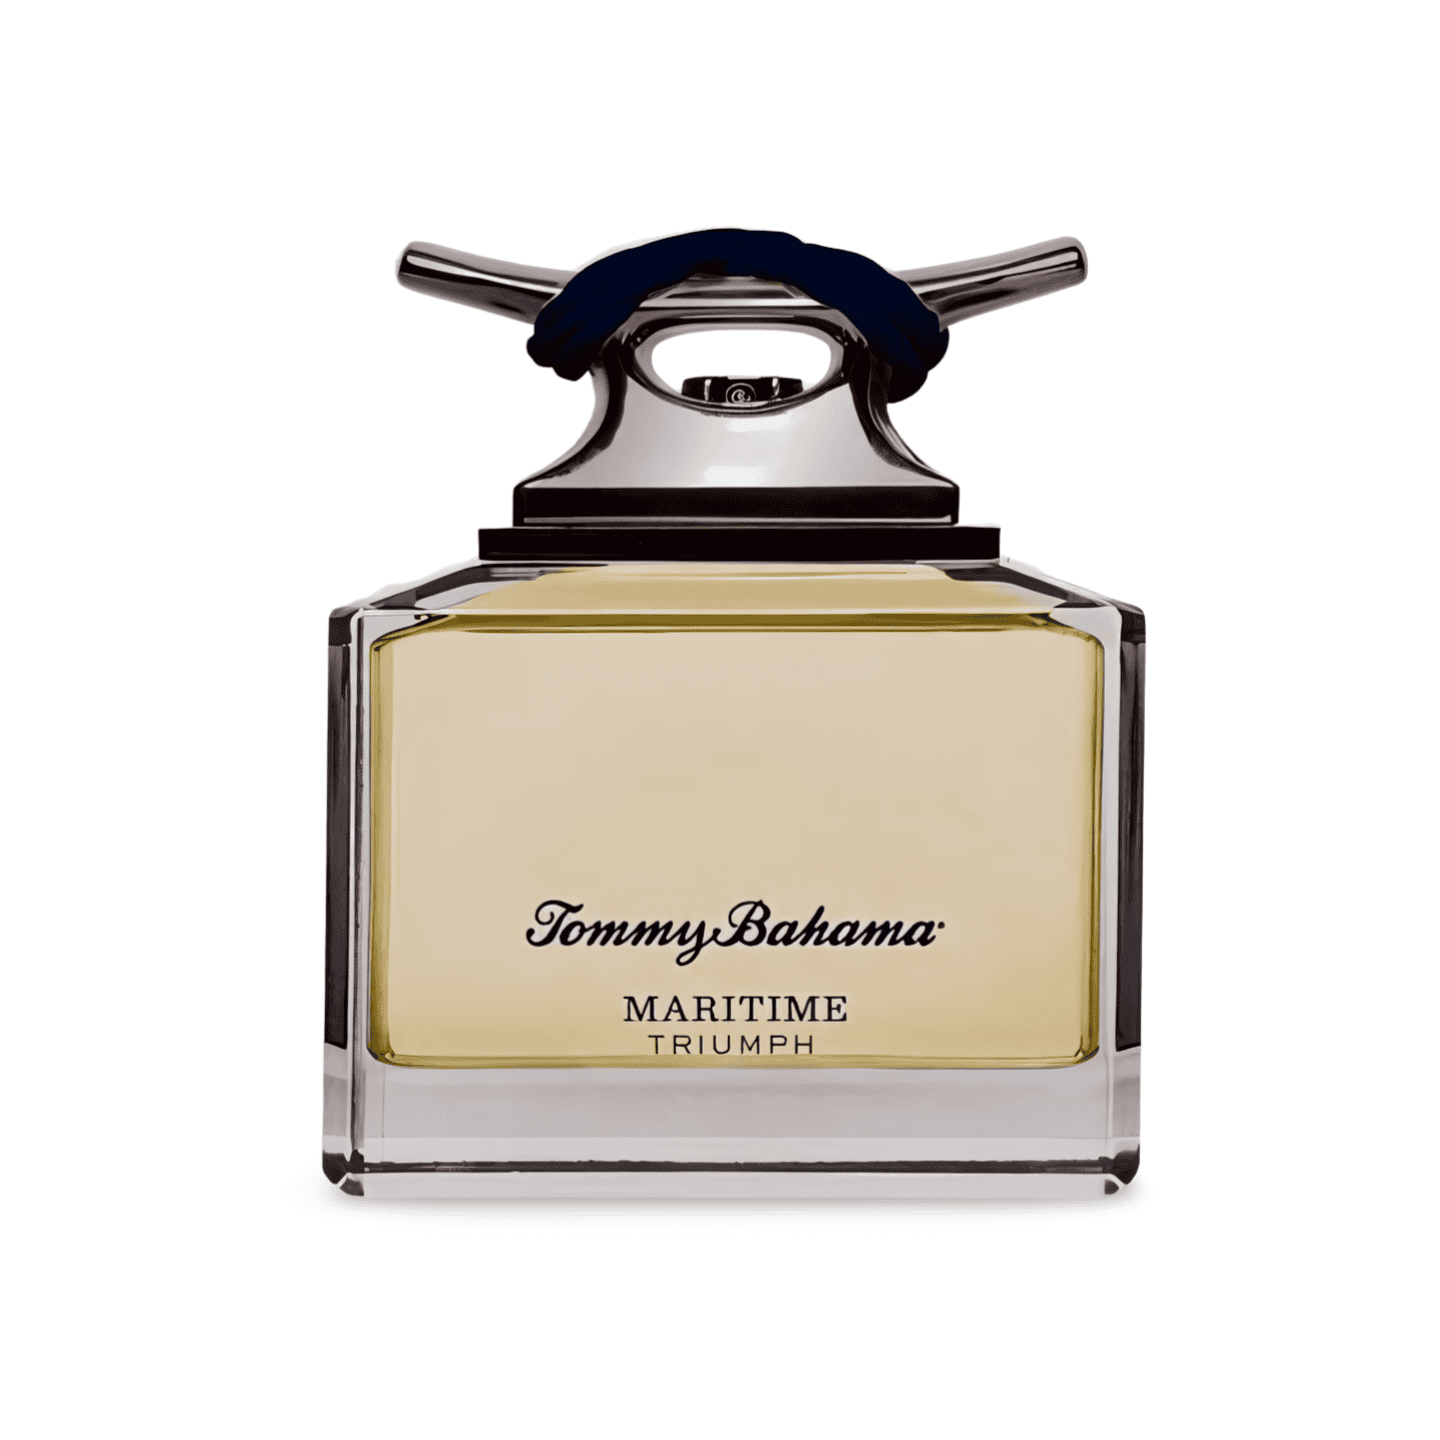 Tommy Bahama Maritime Triumph Eau De Cologne Parfum